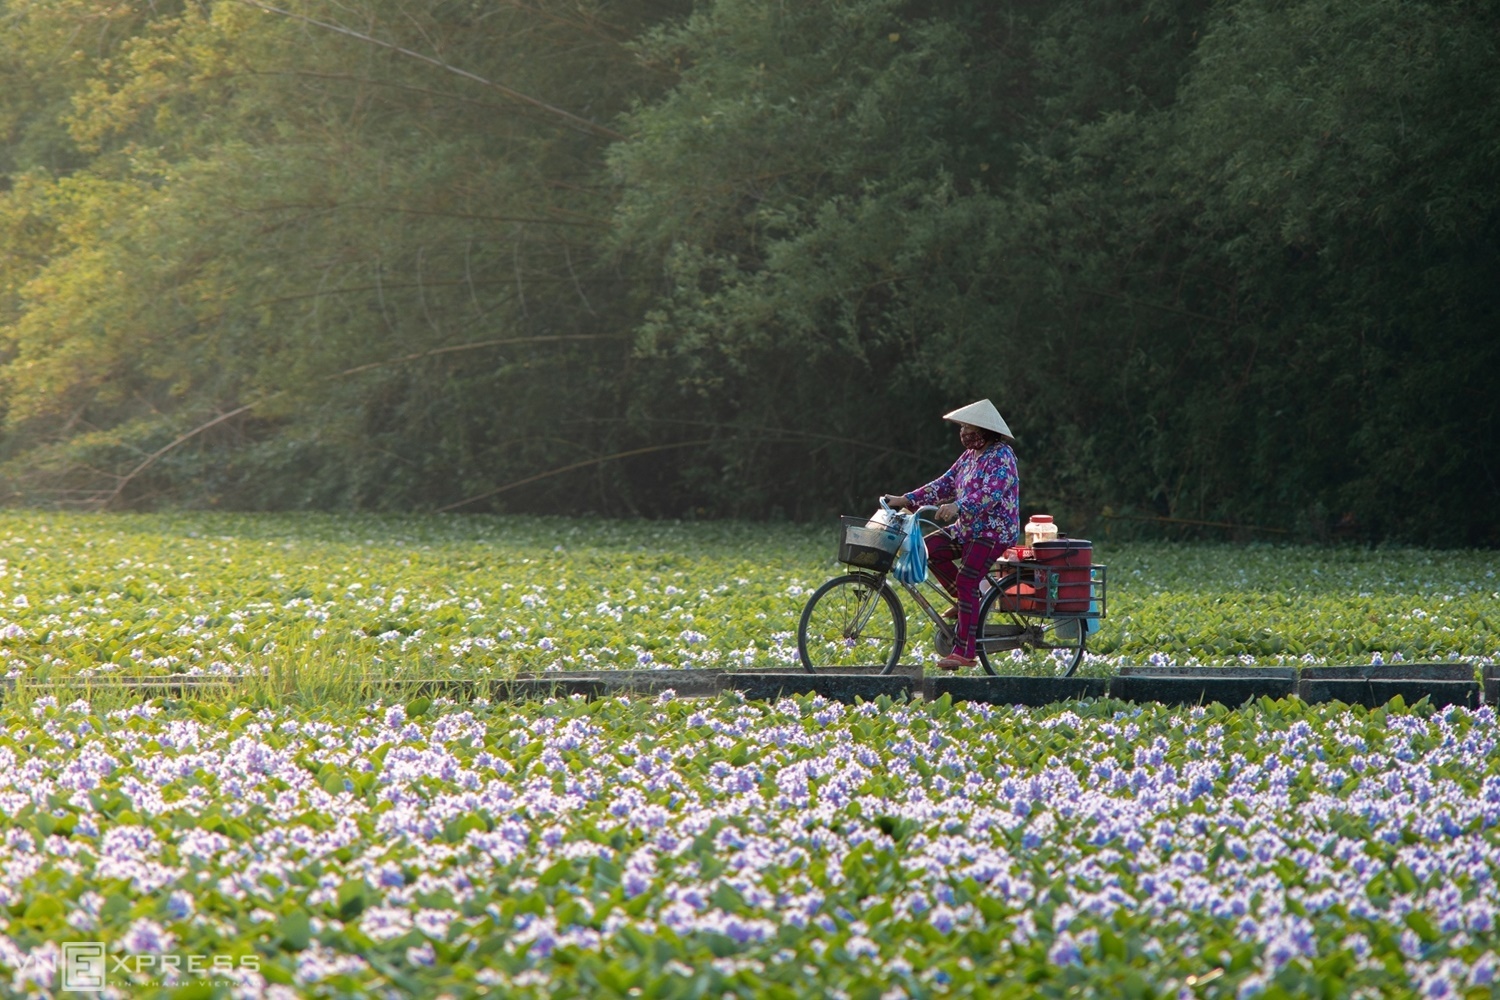 Người phụ nữ đạp xe bán hàng trên đường quê. Một trong những ý nghĩa của loài hoa này chính là sức sống mãnh liệt, dù bị vùi dập bởi mưa gió, dòng chảy nhưng vẫn nở hoa tím biếc và vươn mình đón nắng.